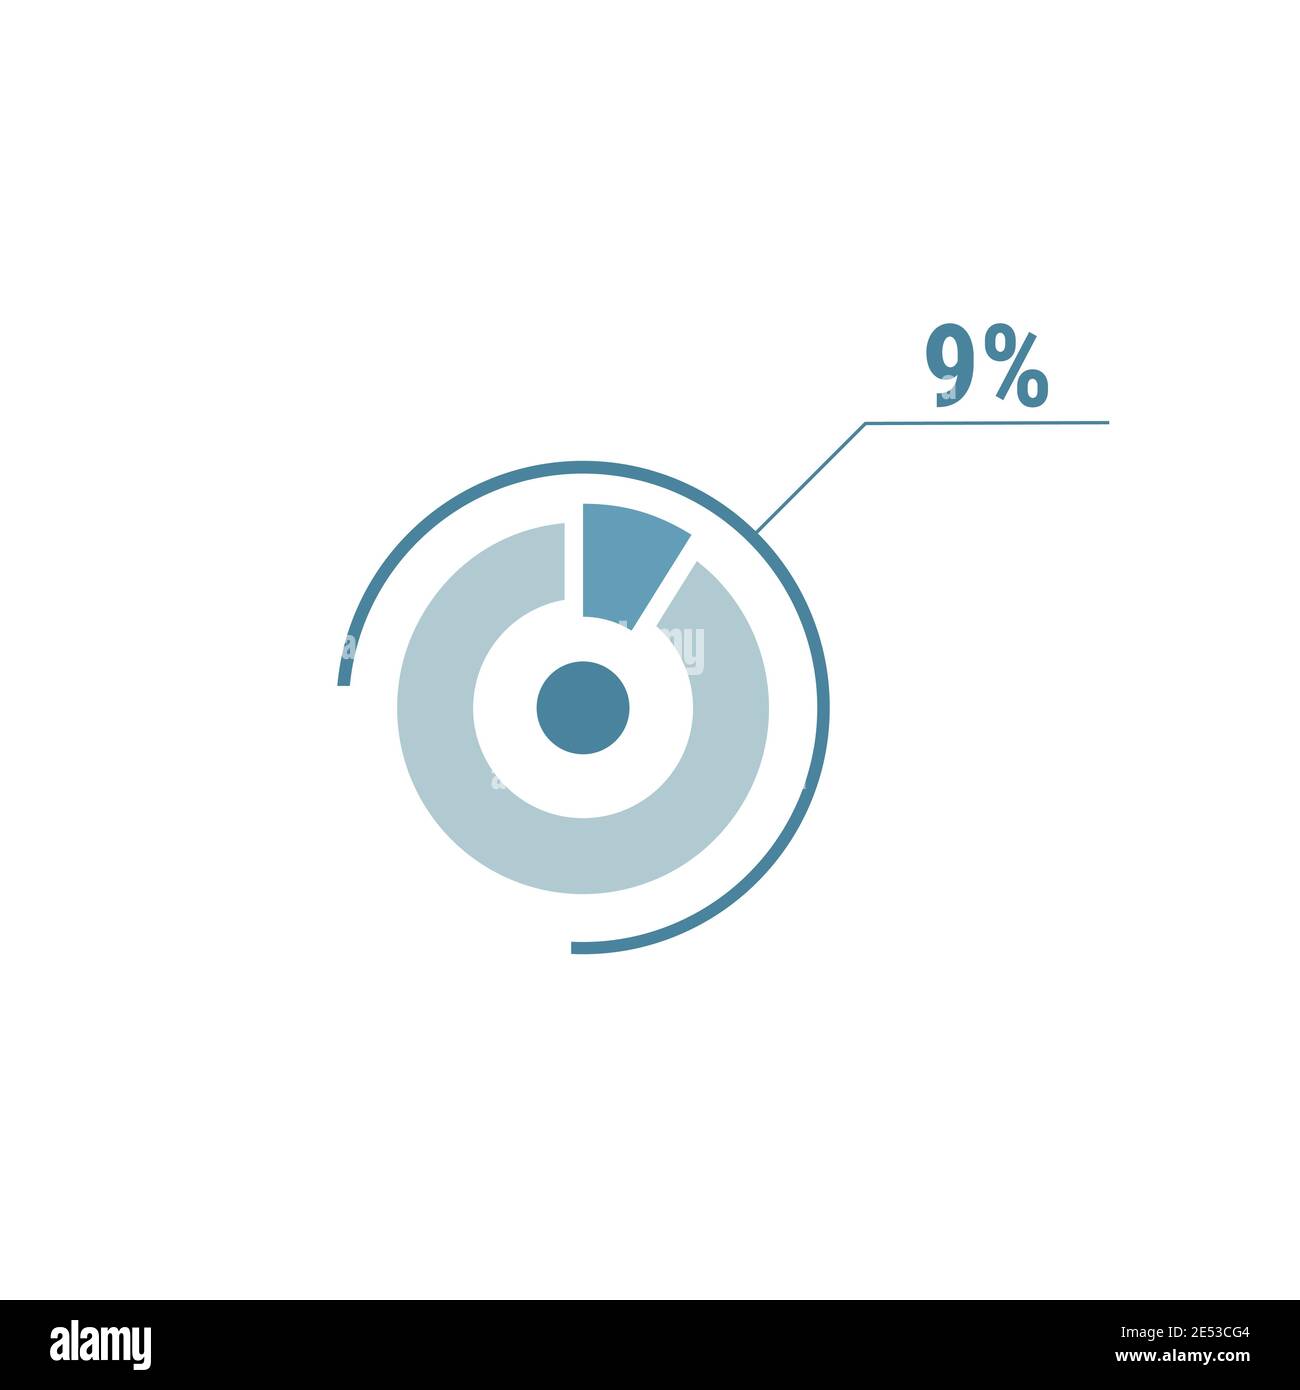 Neun Prozent Diagramm Kreis, 9 Prozent Kreis Diagramm, Vektor-Design-Illustration, blau auf weißem Hintergrund. Stock Vektor